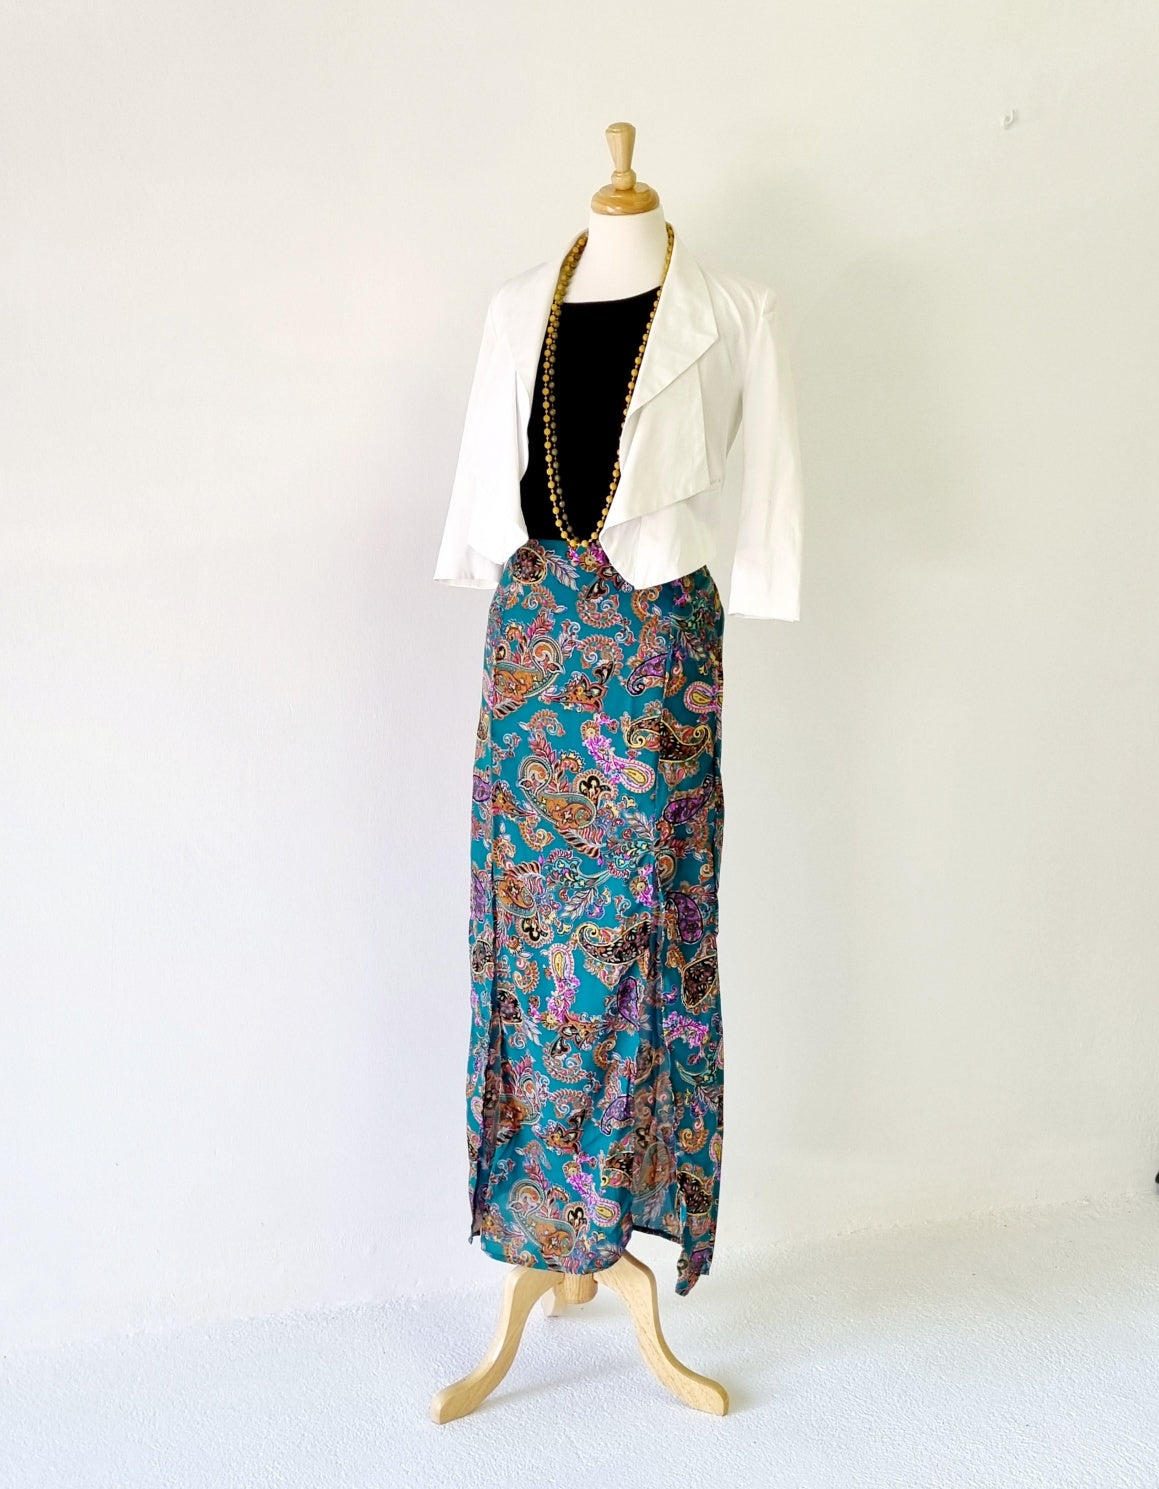 No Tag - Green & pink paisley patterned long skirt